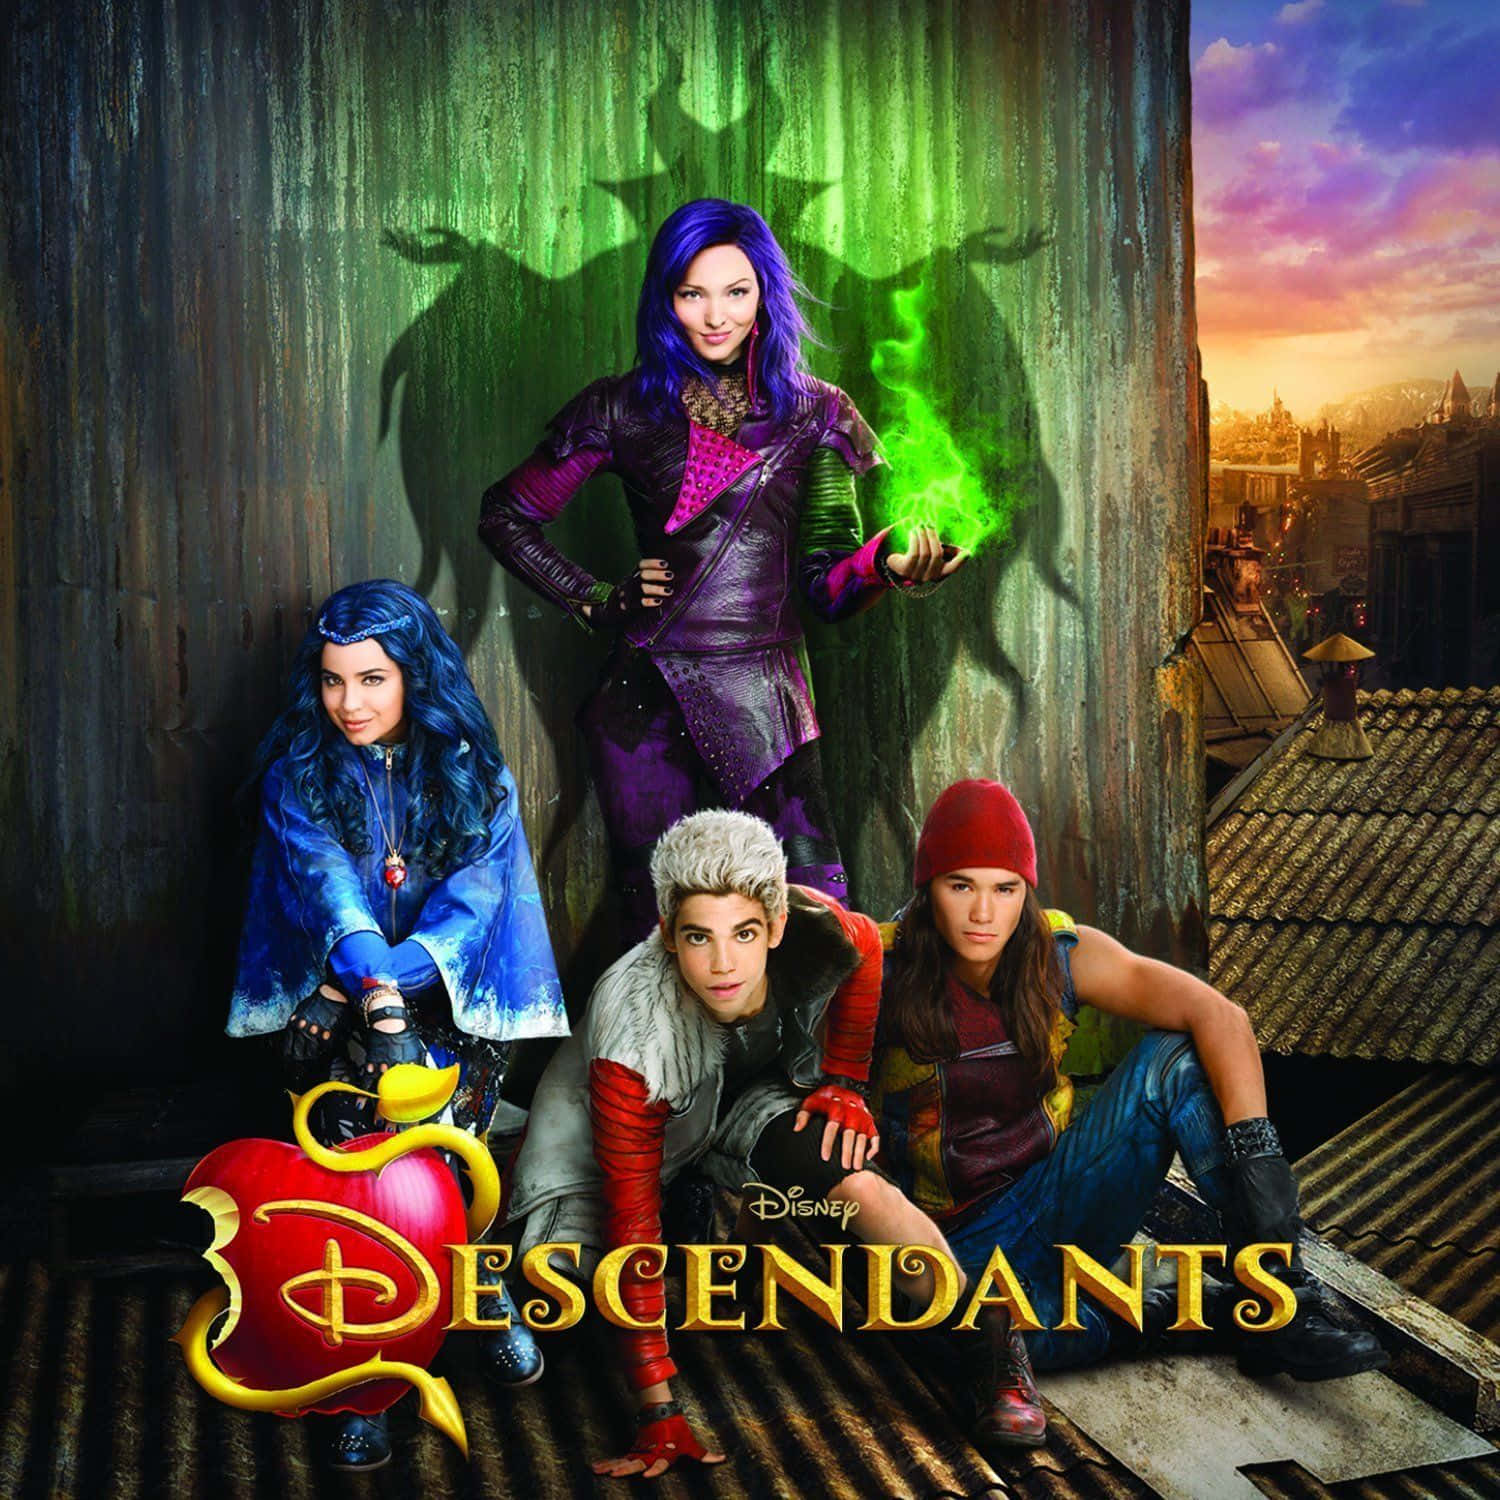 Affascinantiillustrazioni Dei Personaggi Di Disney's Descendants.